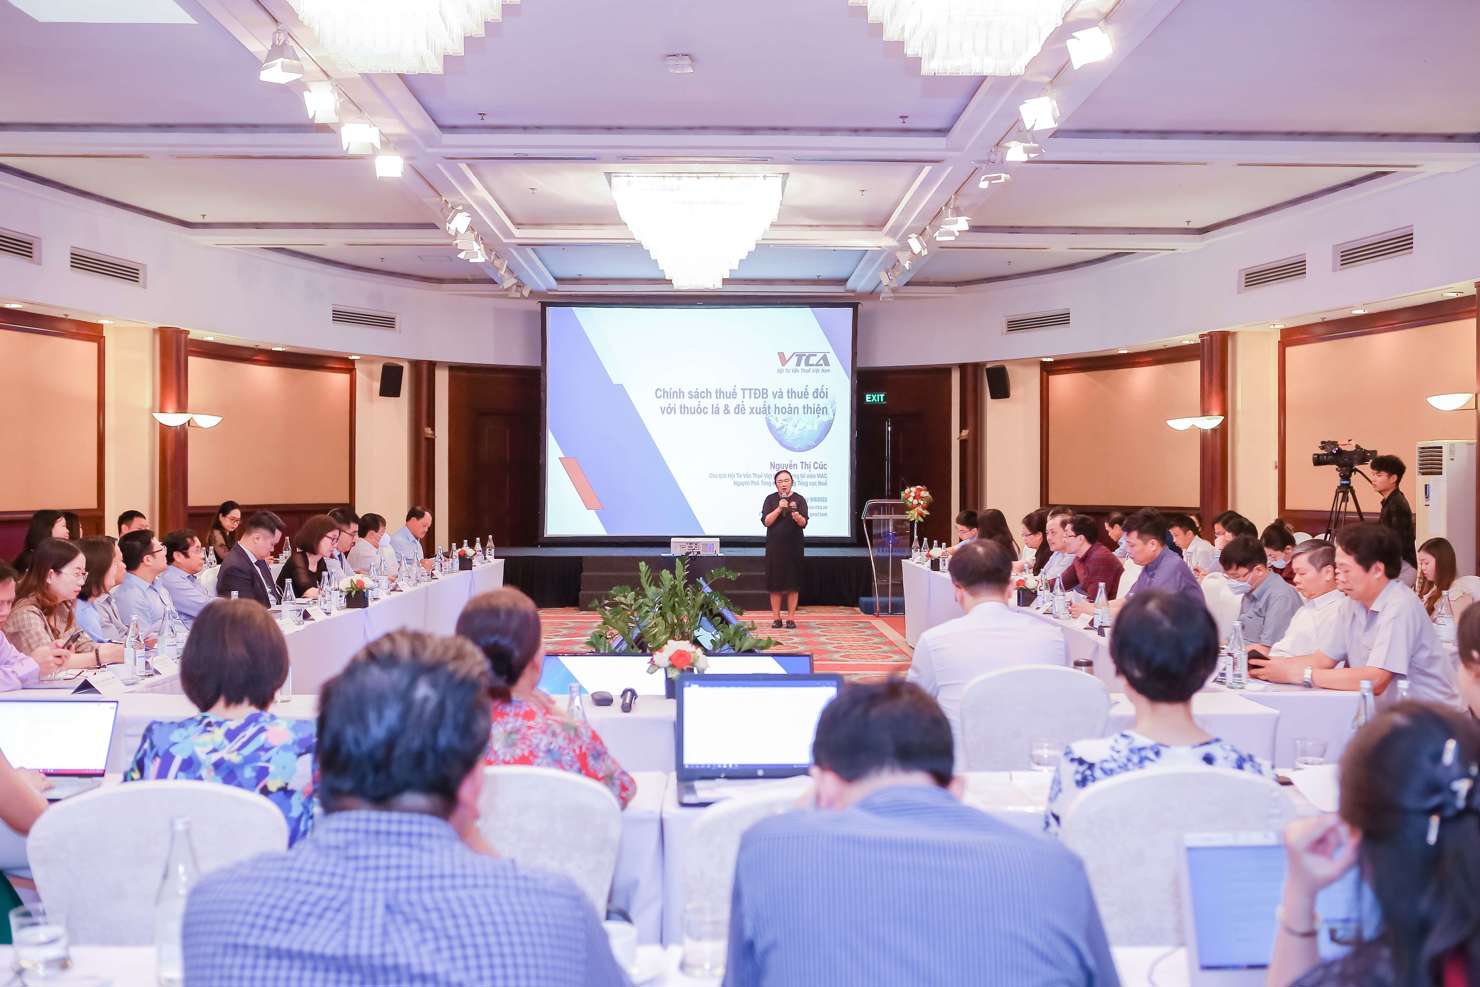 Cải cách thuế tiêu thụ đặc biệt nhận được sự quan tâm của nhiều chuyên gia tại Hội thảo “Thuế tiêu thụ đặc biệt - Hài hòa giữa điều tiết nguồn thu ngân sách Nhà nước và phát triển sản xuất kinh doanh” được tổ chức vào tháng 8/2022 tại Hà Nội.